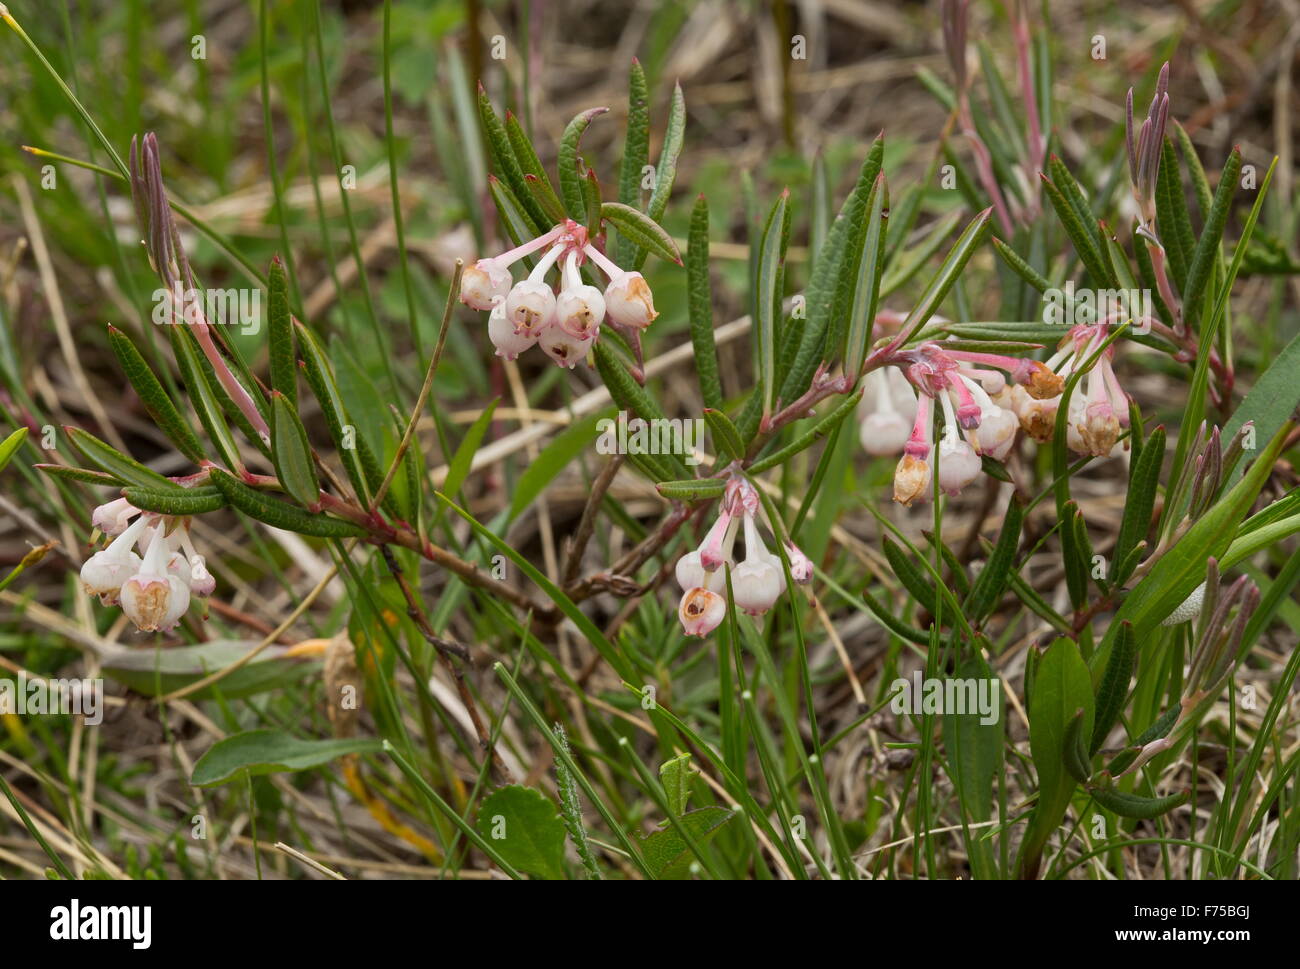 Bog-rosemary, Andromeda polifolia var. glaucophylla, in flower on bog surface. Stock Photo